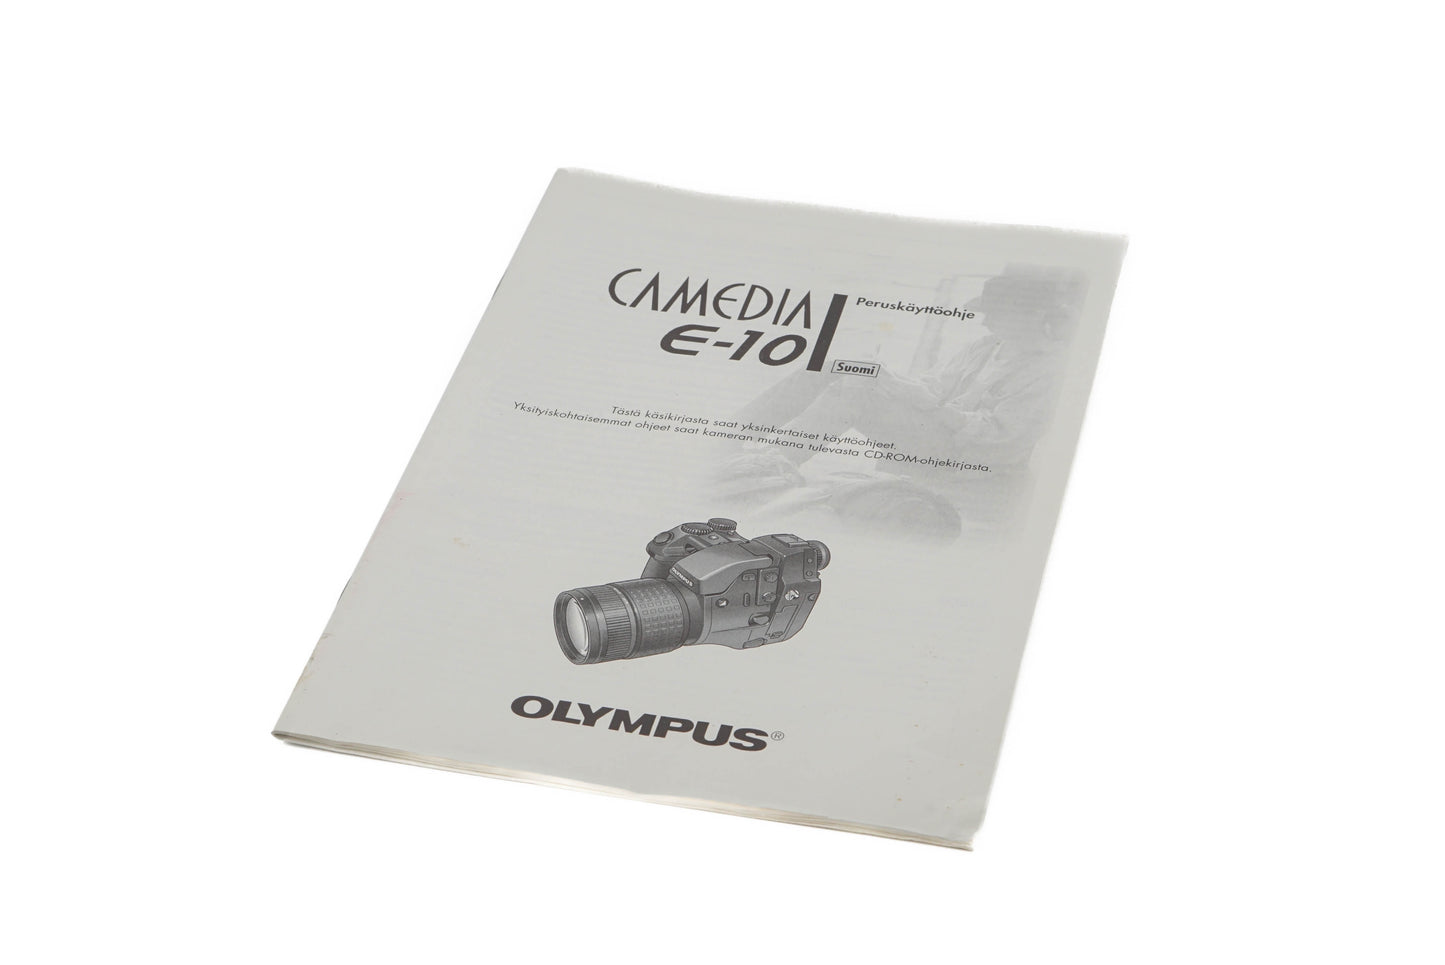 Olympus Camedia E-10 Instructions